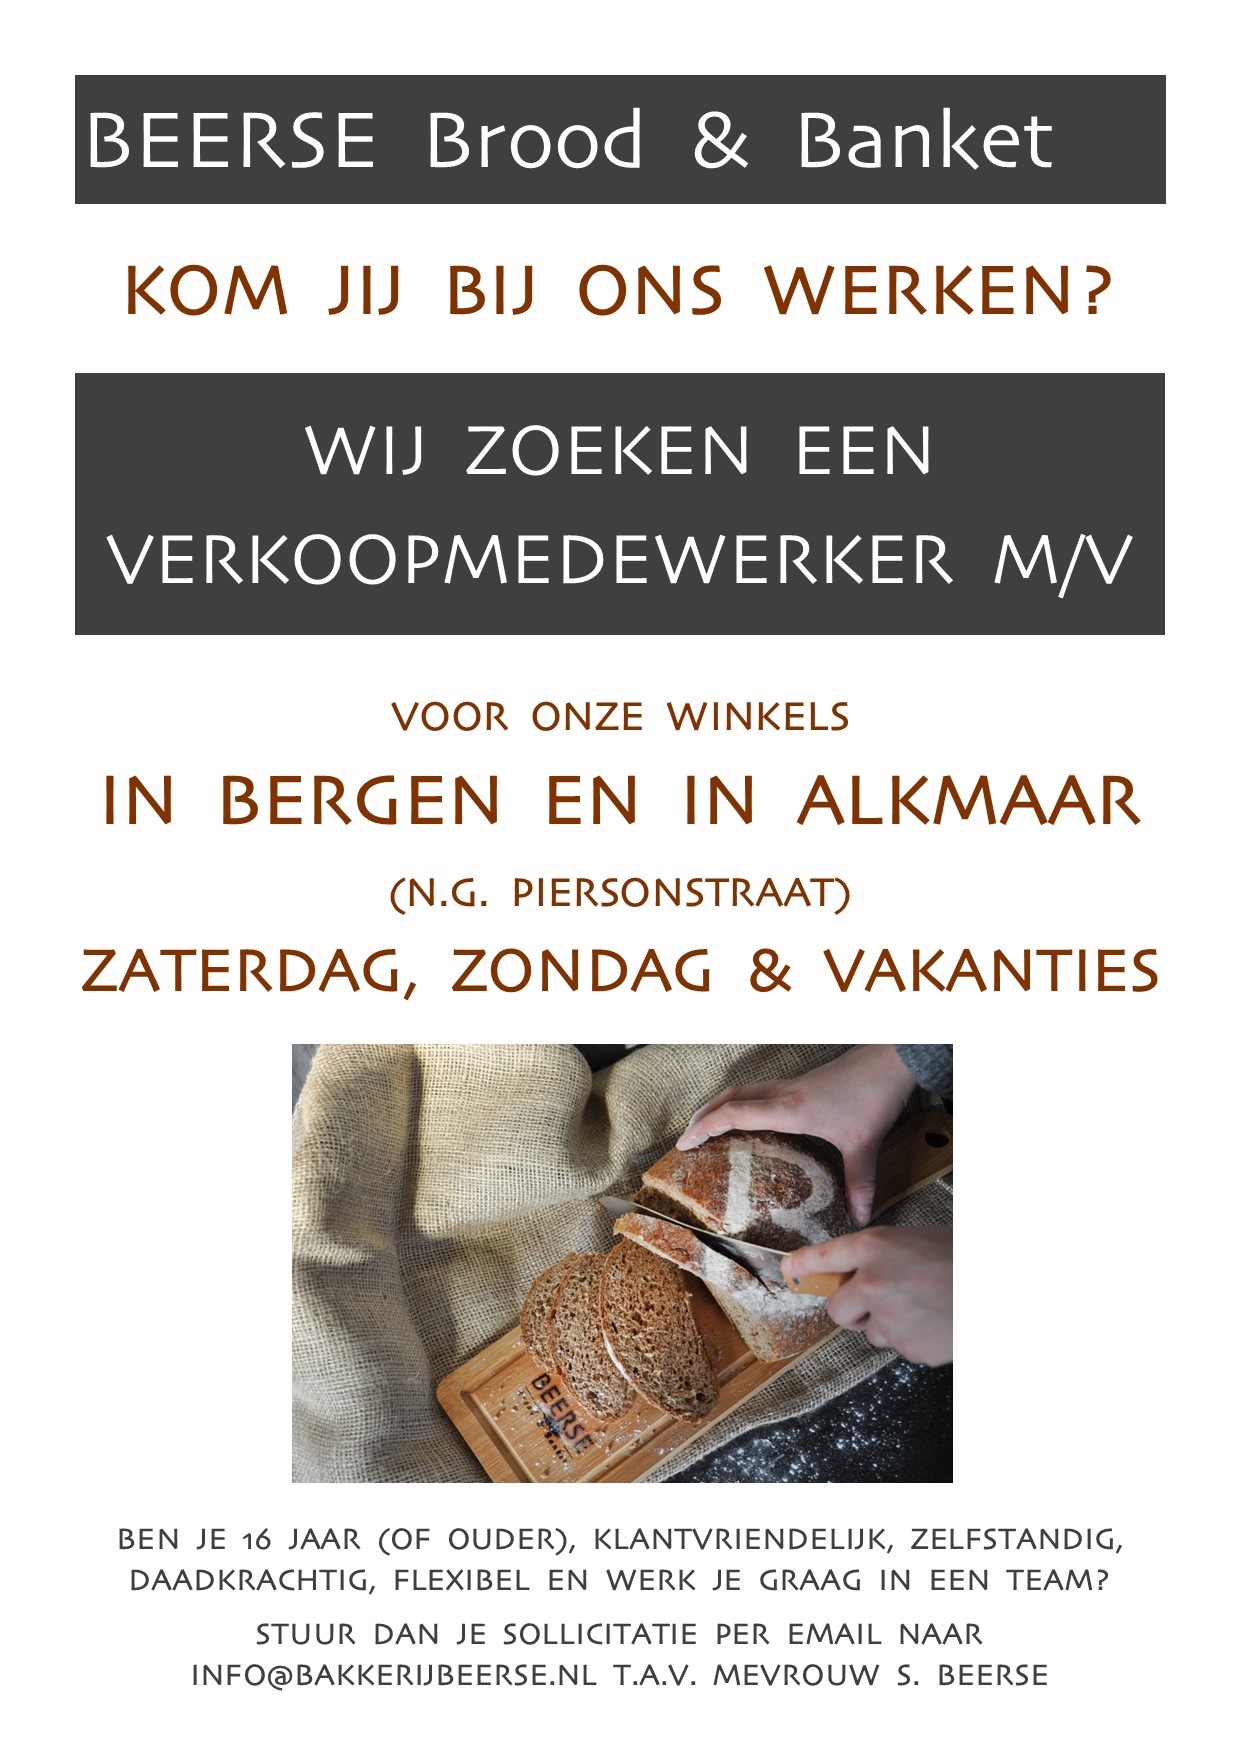 Vacature in onze winkels in Alkmaar (N.G. Piersonstraat) en in Bergen